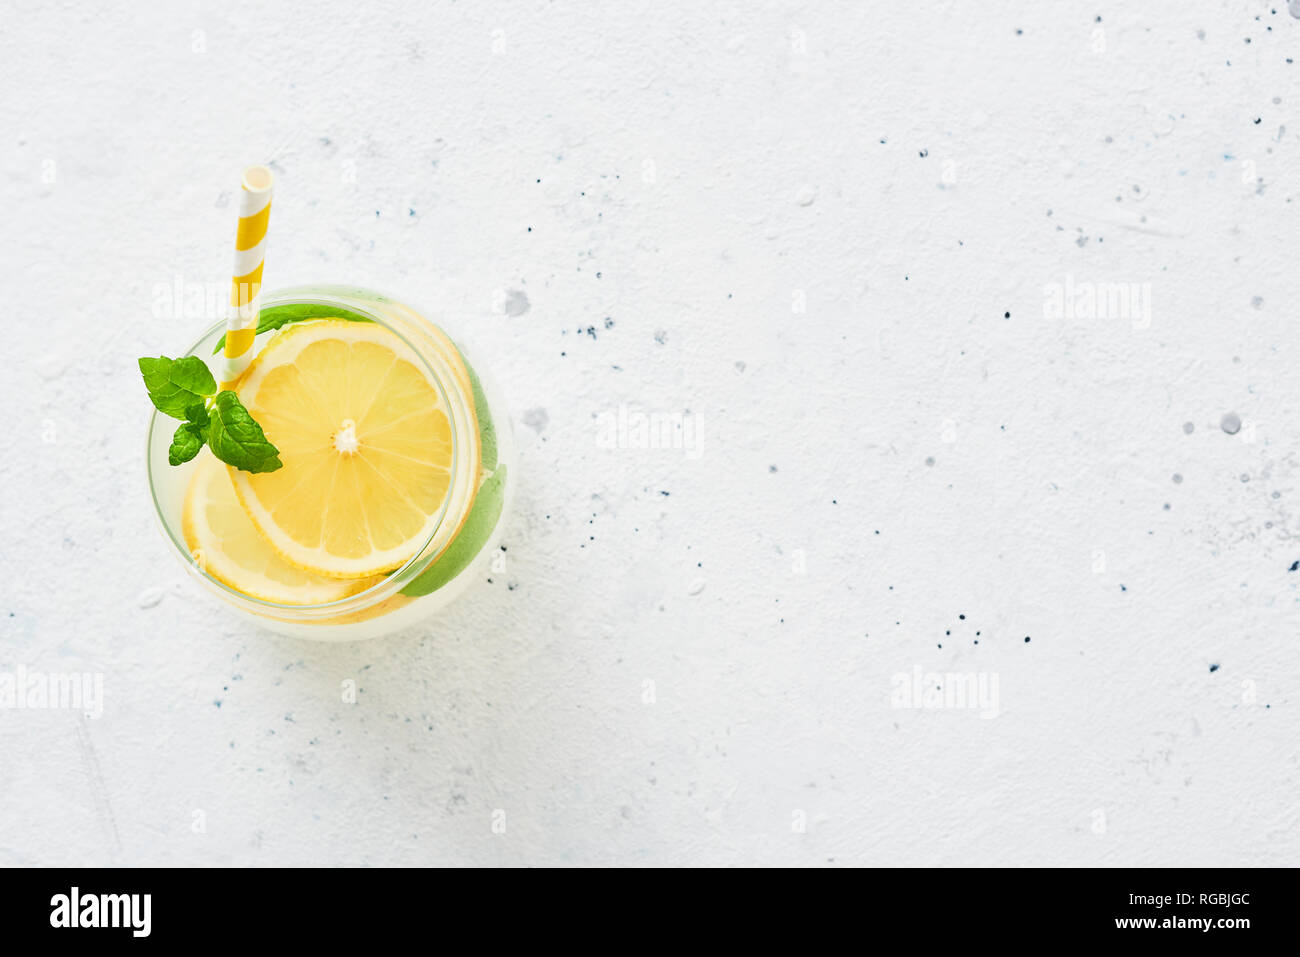 Froid de glace boisson d'été. Limonade traditionnelle ou avec mojito citron, de la menthe et de la glace sur fond blanc. Vue d'en haut. L'espace de copie pour le texte. Banque D'Images